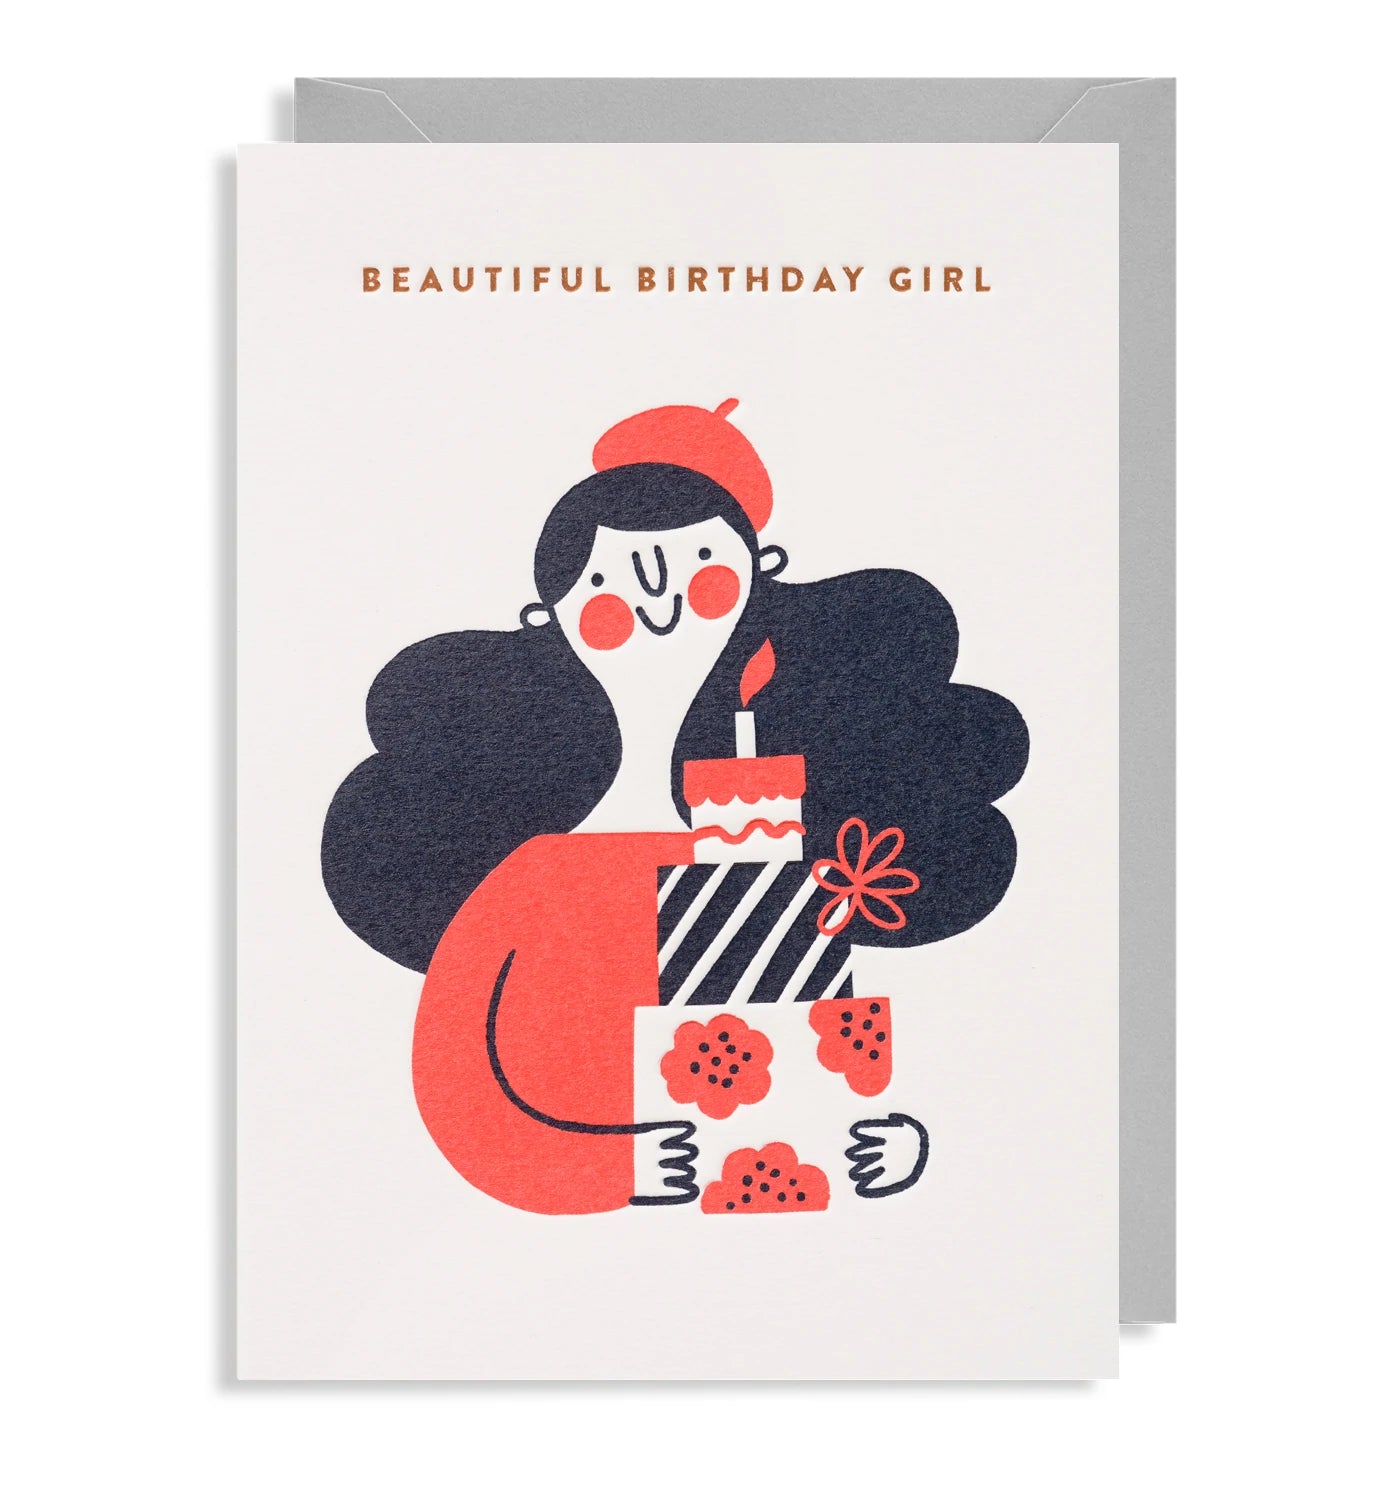 Beautiful Birthday Girl Birthday Card